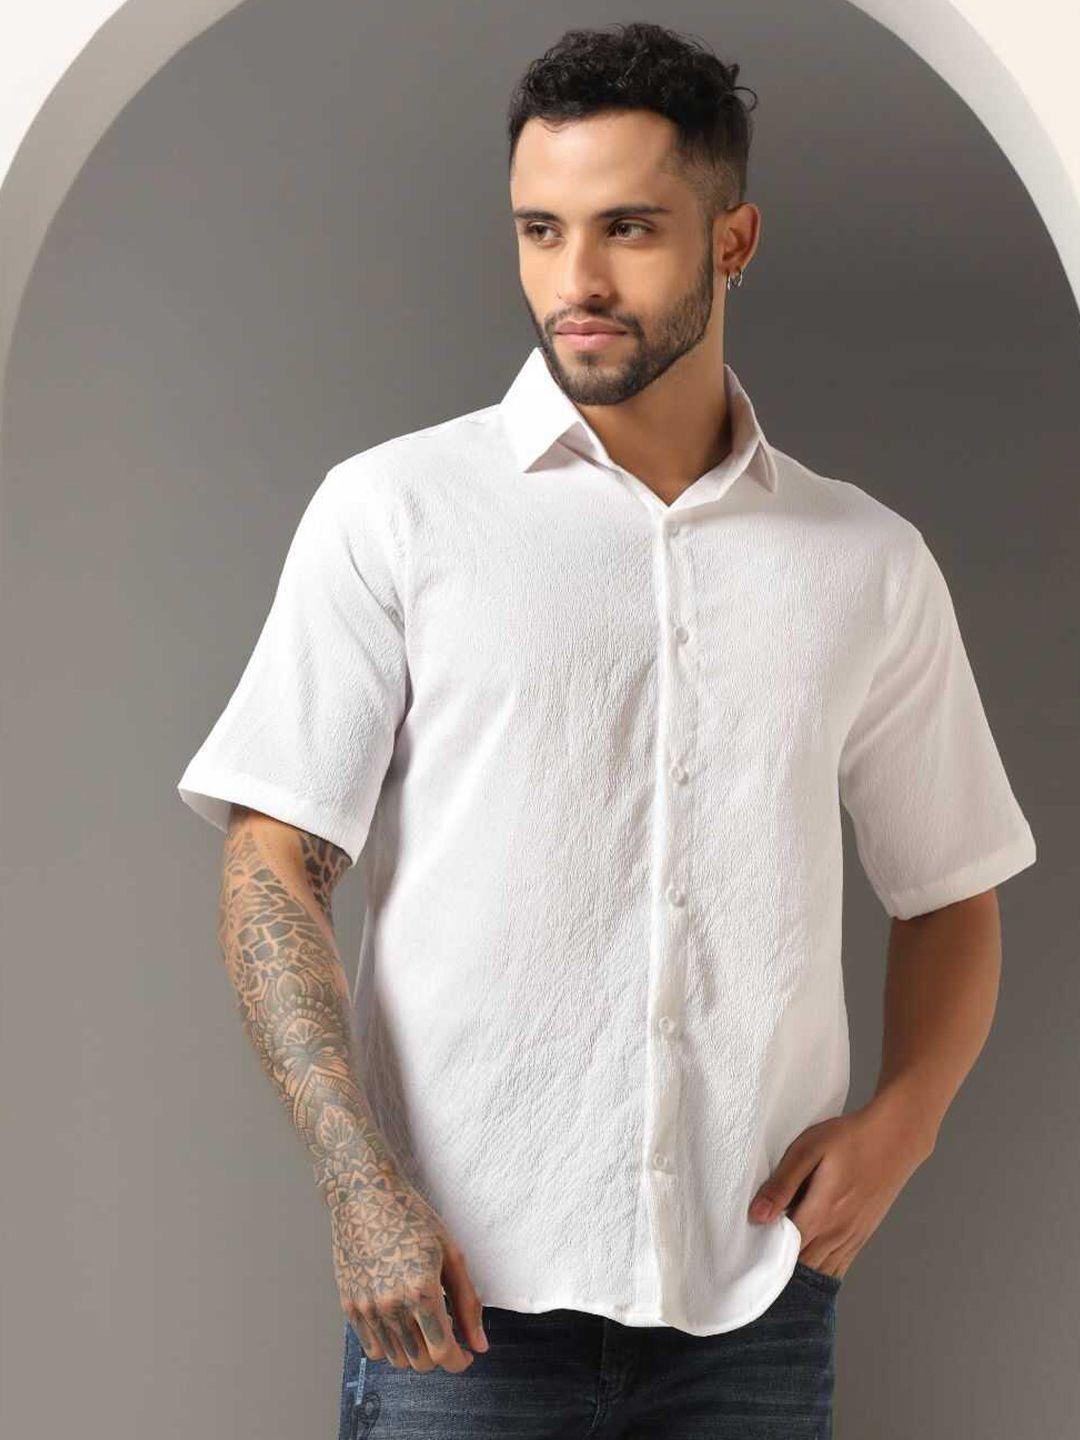 greciilooks-men-classic-opaque-casual-shirt